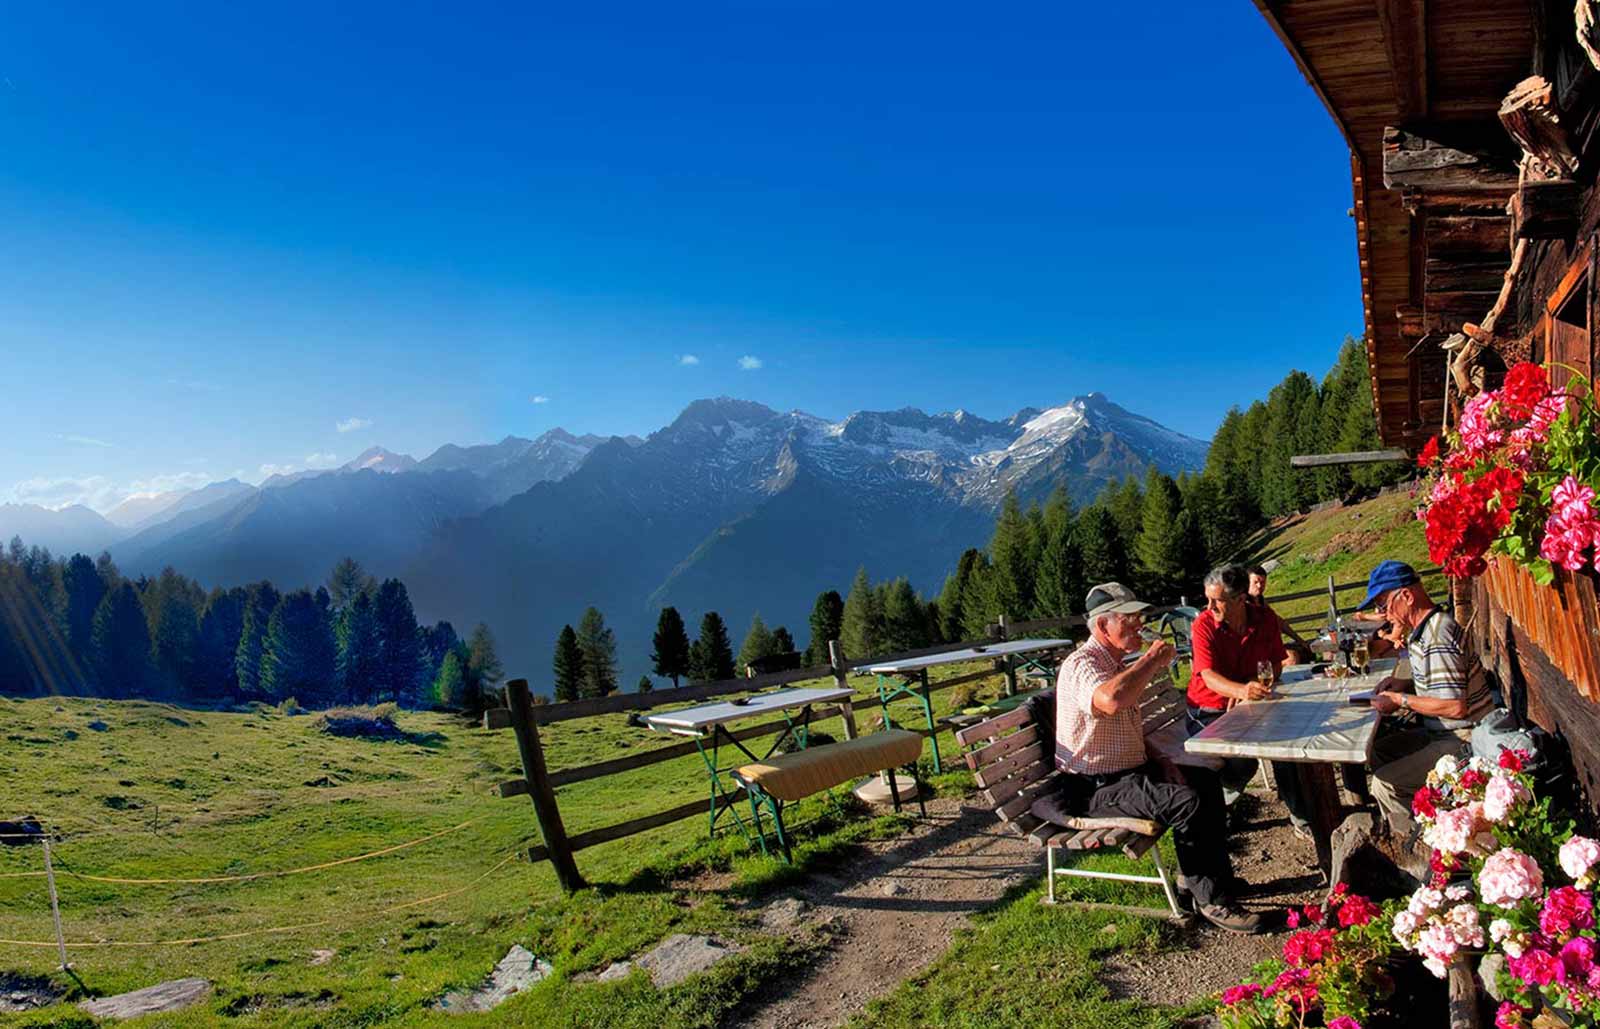 Eine Gruppe Wanderer trinkt ein Bier auf dem Berg mit einem wunderschönen Ausblick auf die umliegenden Berge.